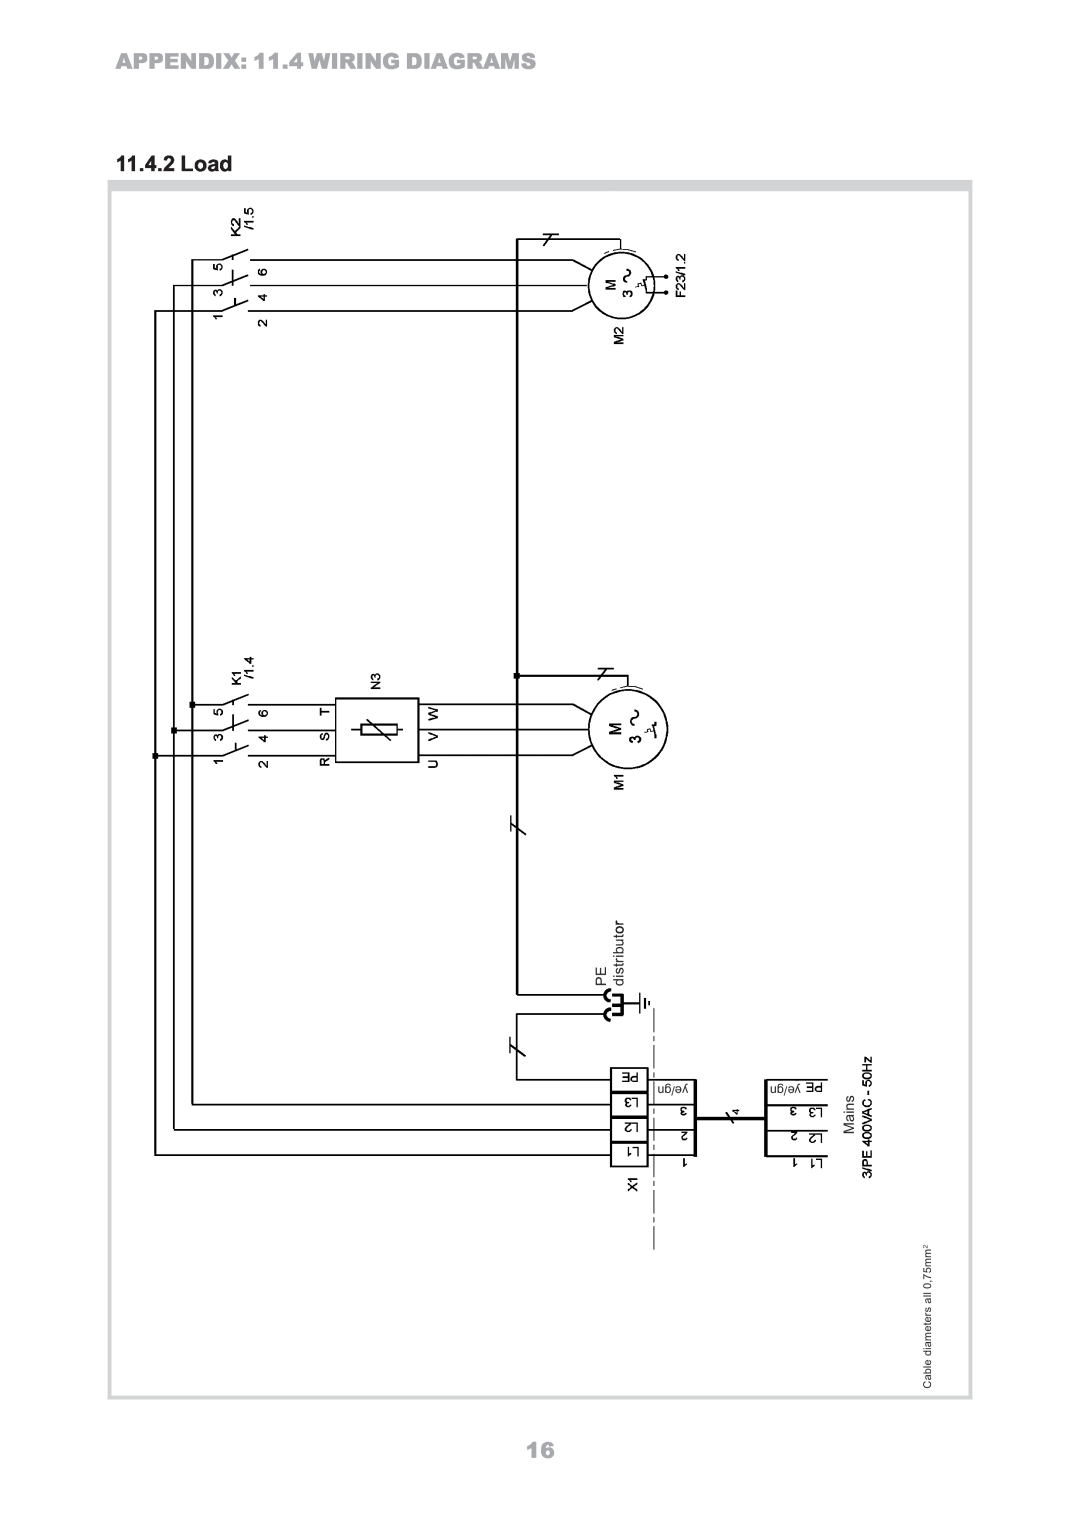 Dimplex LA16ASR manual 1L3/PE, Load, PE-PEdistributorVerteiler, 2L3LMainsNetz400VAC 24L 1L, 5./1K2, 4./1K1N35T6W, 2MF23/1 